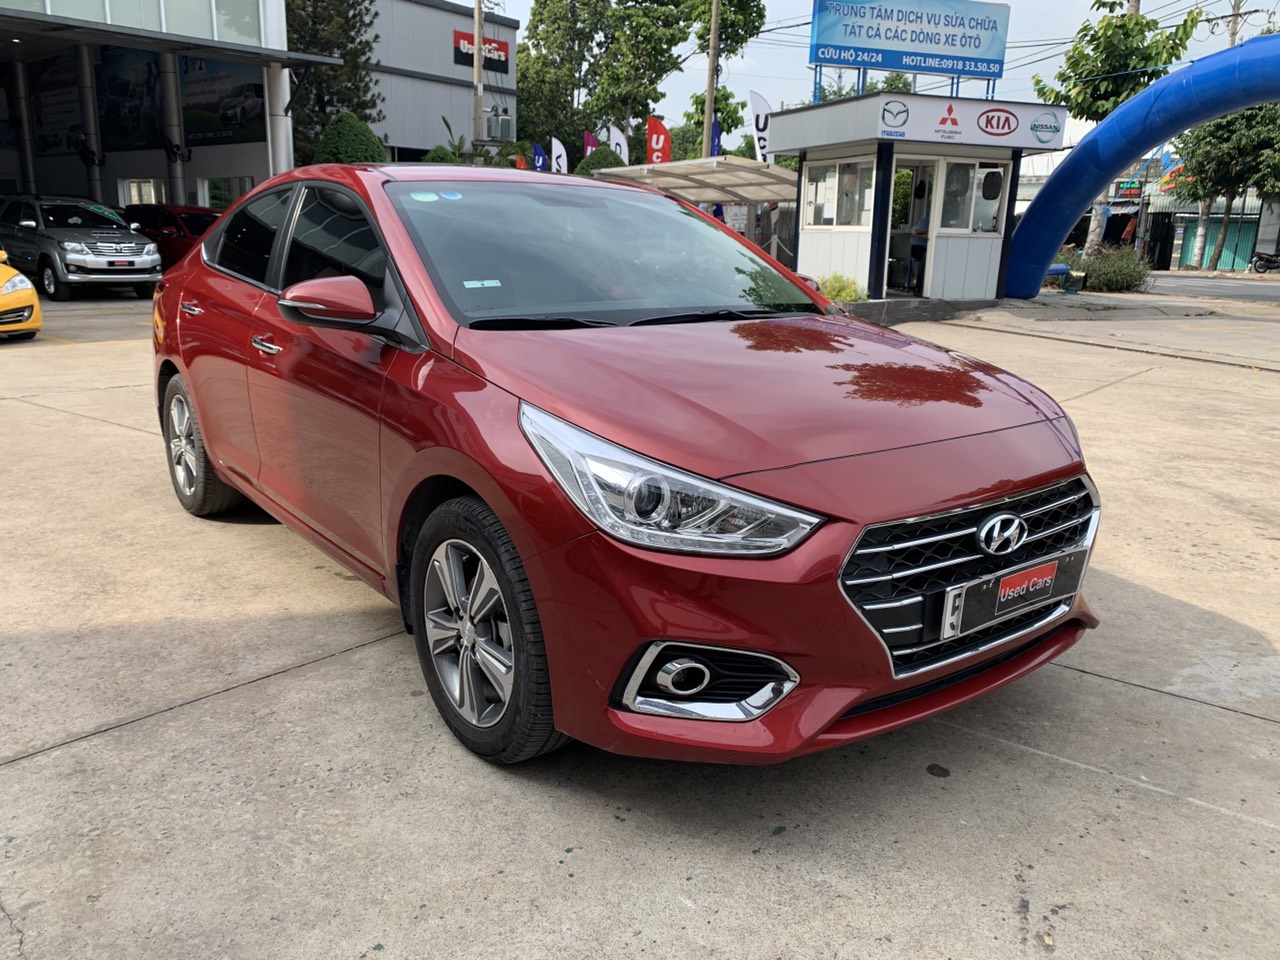 Hyundai Accent 1.4 2019 - Accent 2019 bản cao cấp, xe đẹp đi lướt